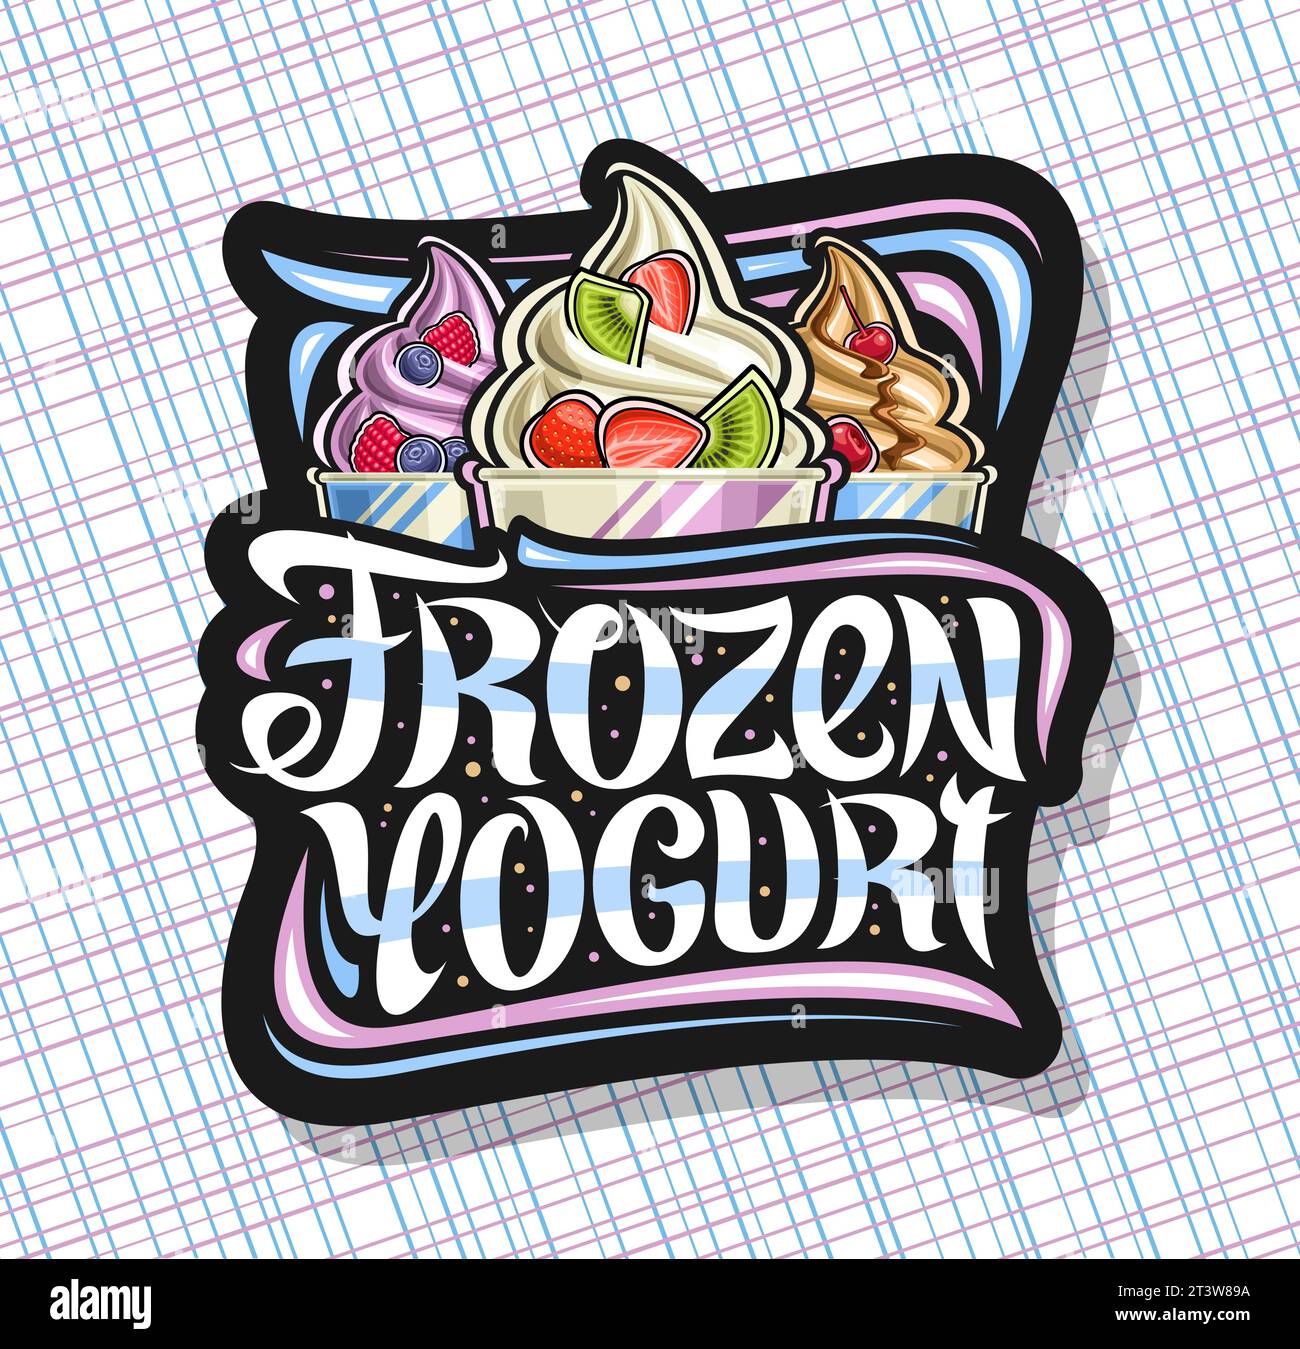 Vektor-Logo für gefrorenen Joghurt, schwarze dekorative Schild mit Illustration von drei verschiedenen bunten Eis mit frischen Obstscheiben in Papier tu Stock Vektor